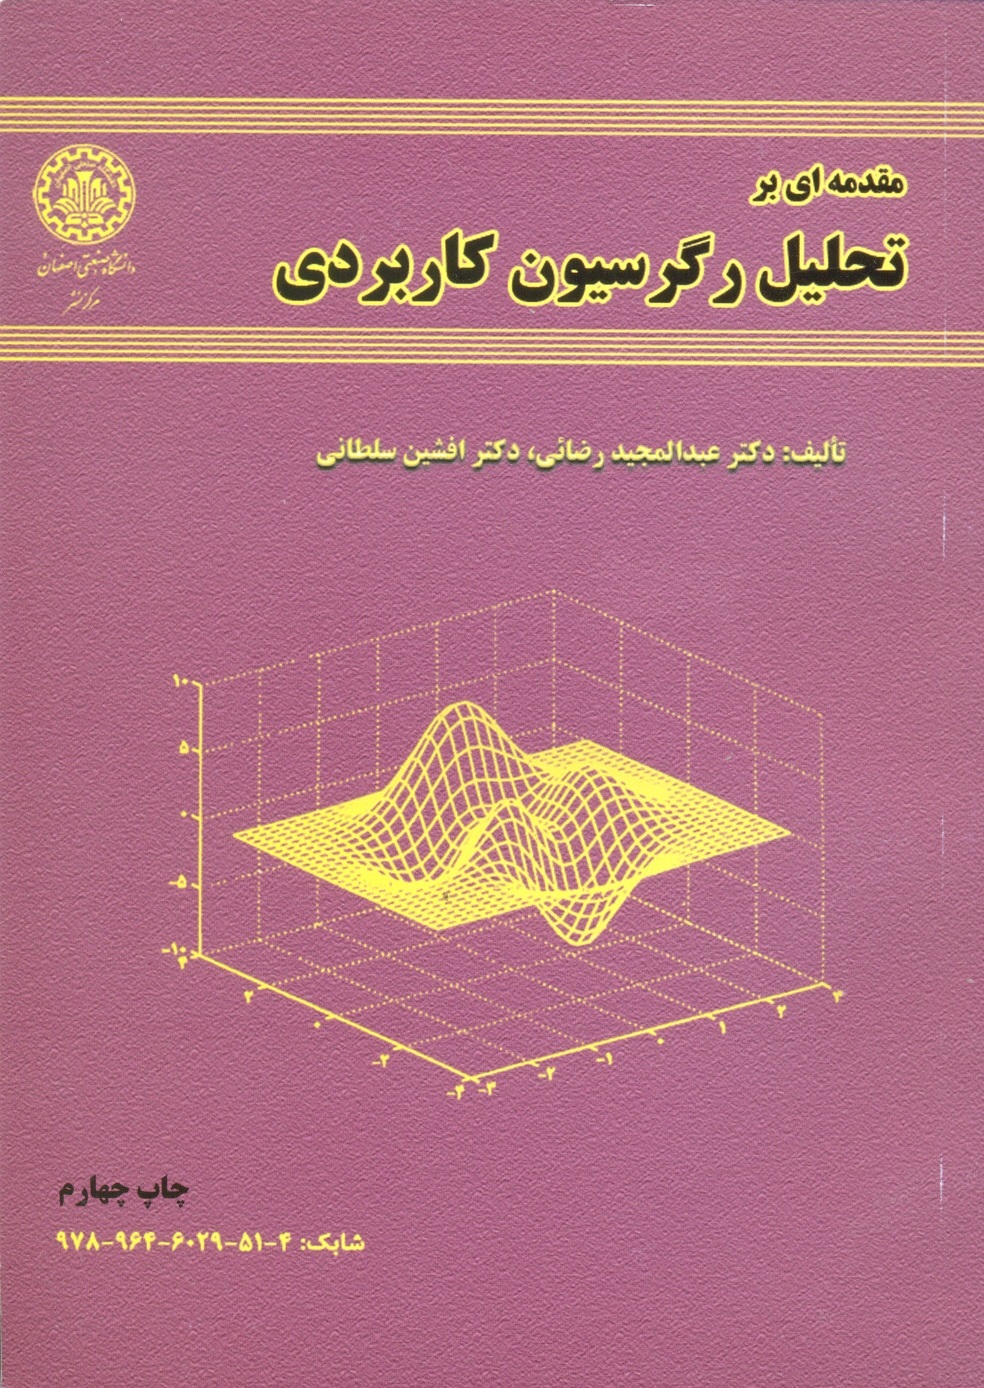 مقدمه ای برتحلیل رگرسیون کاربردی -رضایی / صنعتی اصفهان